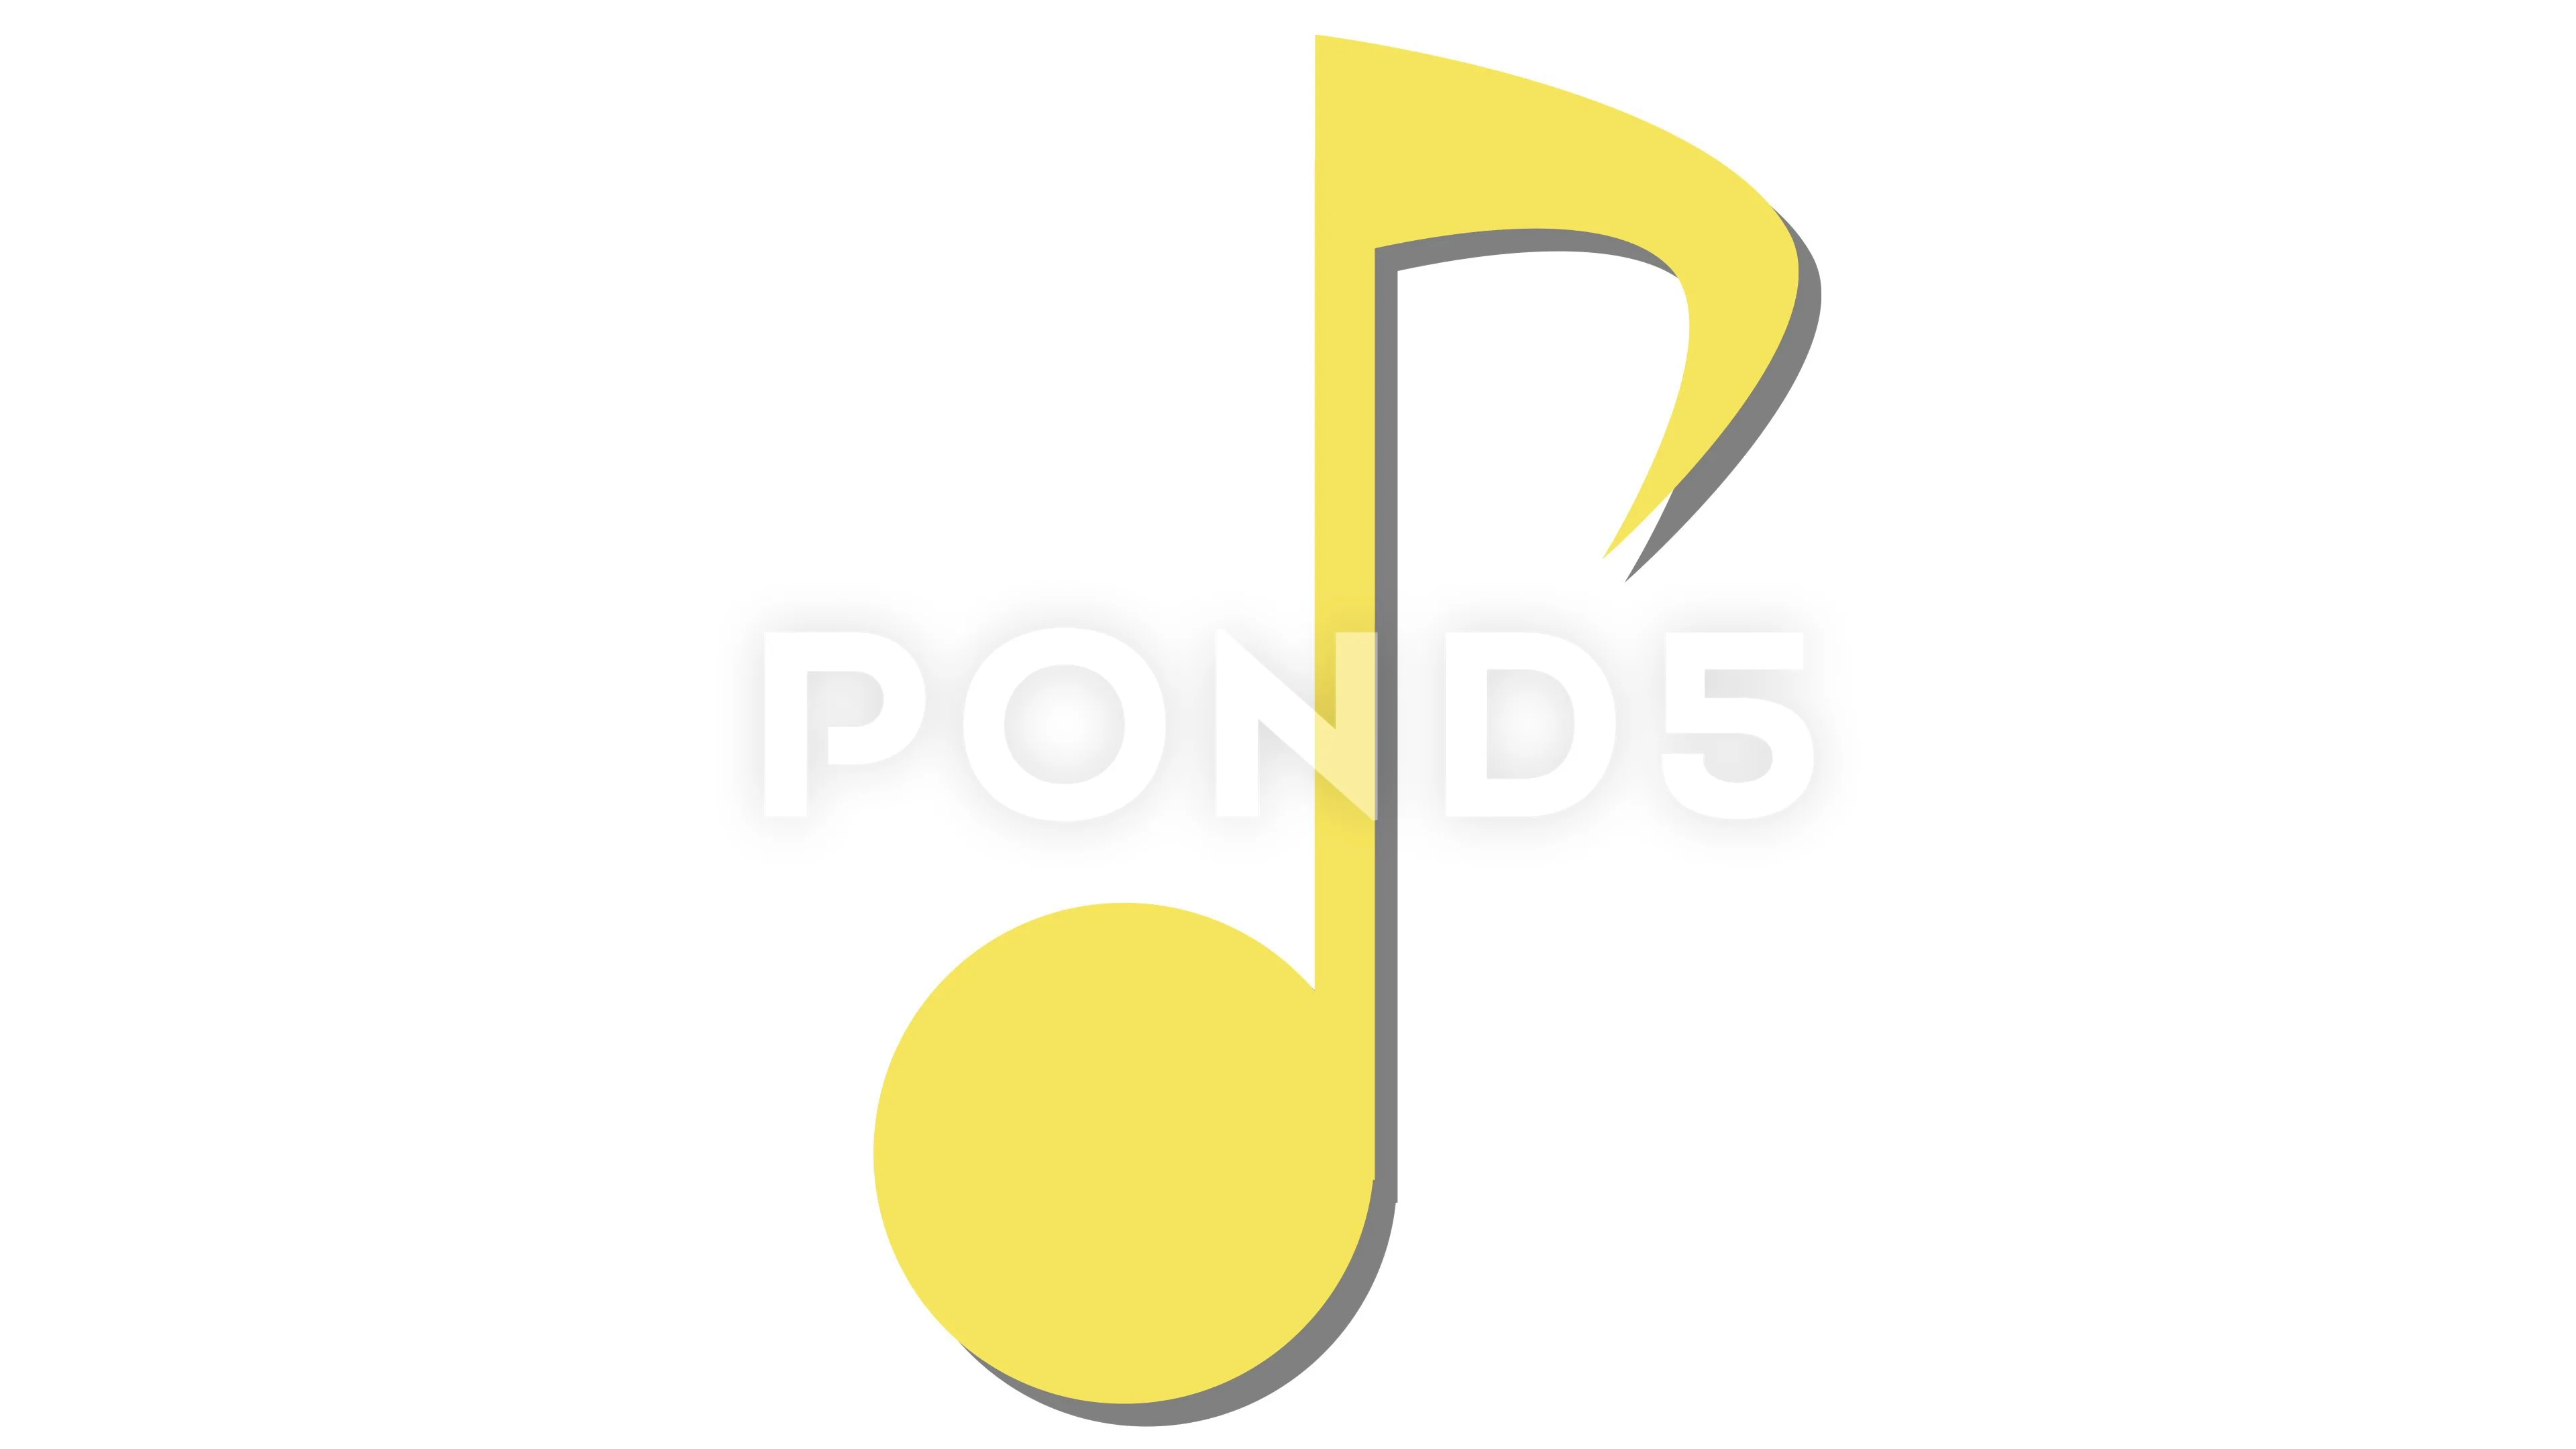 individual musical notes symbols